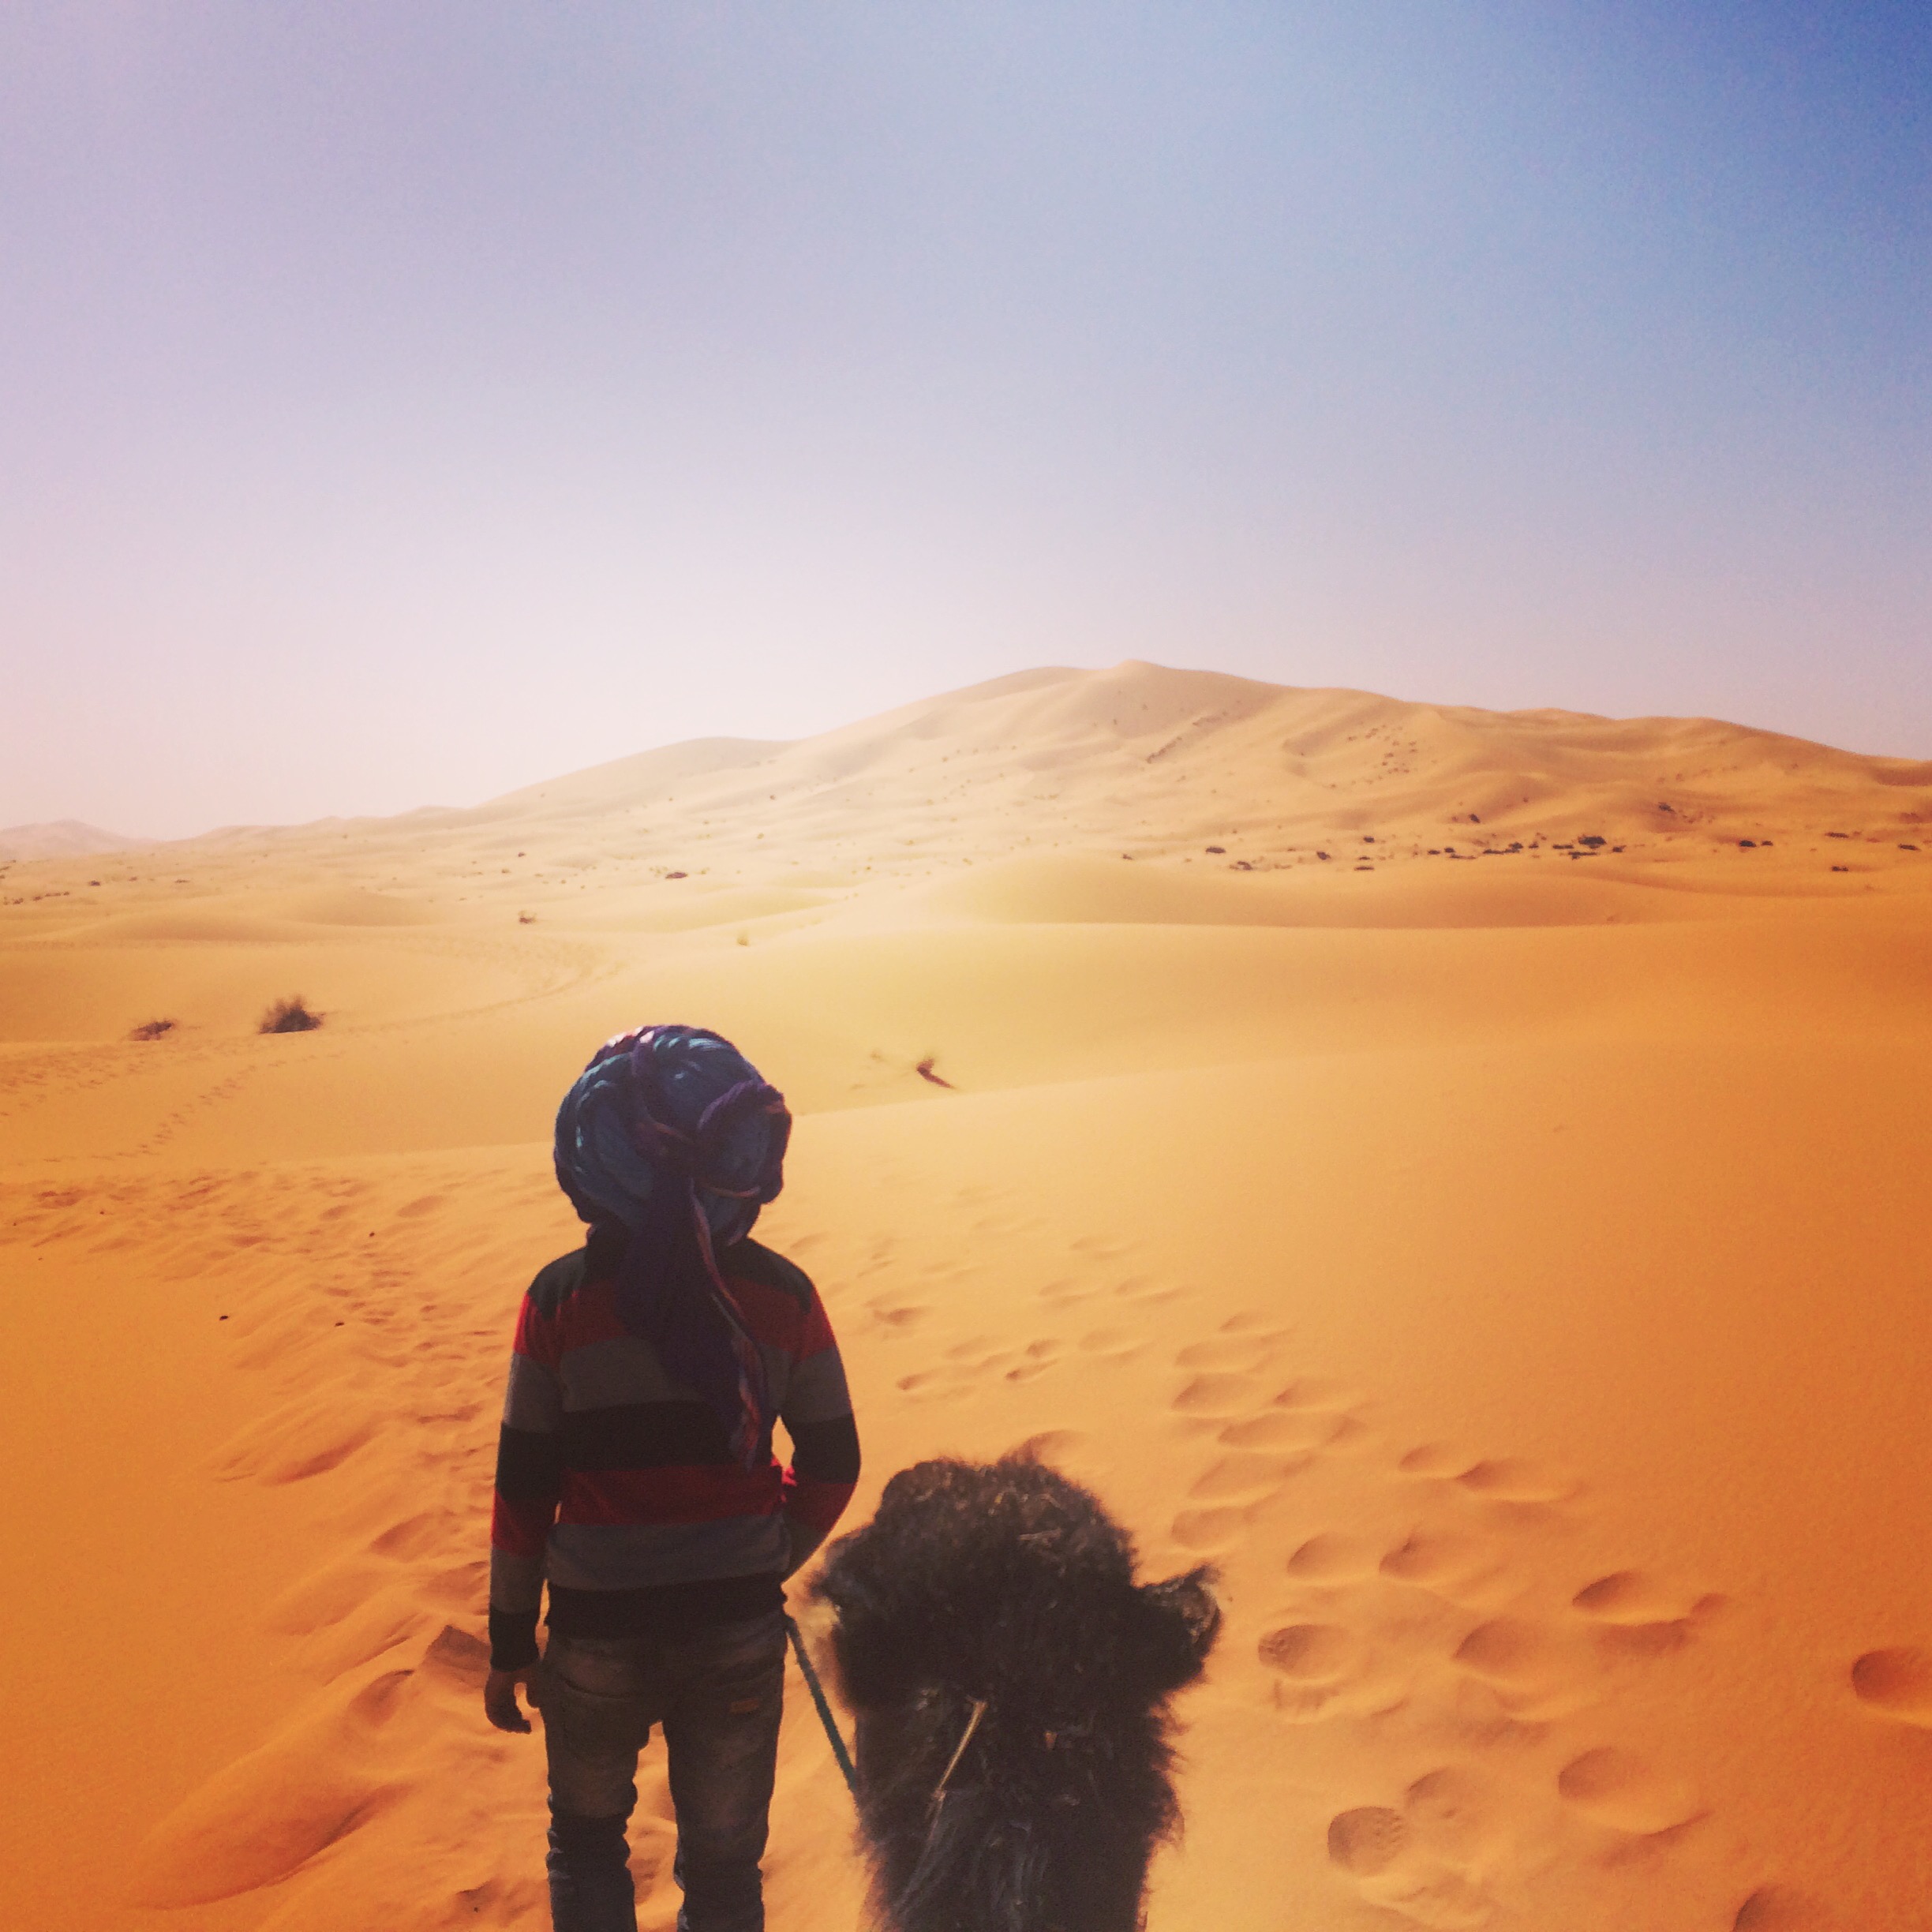 【サハラ砂漠への行き方・楽しみ方】人生1度は砂漠に行こう。体験談